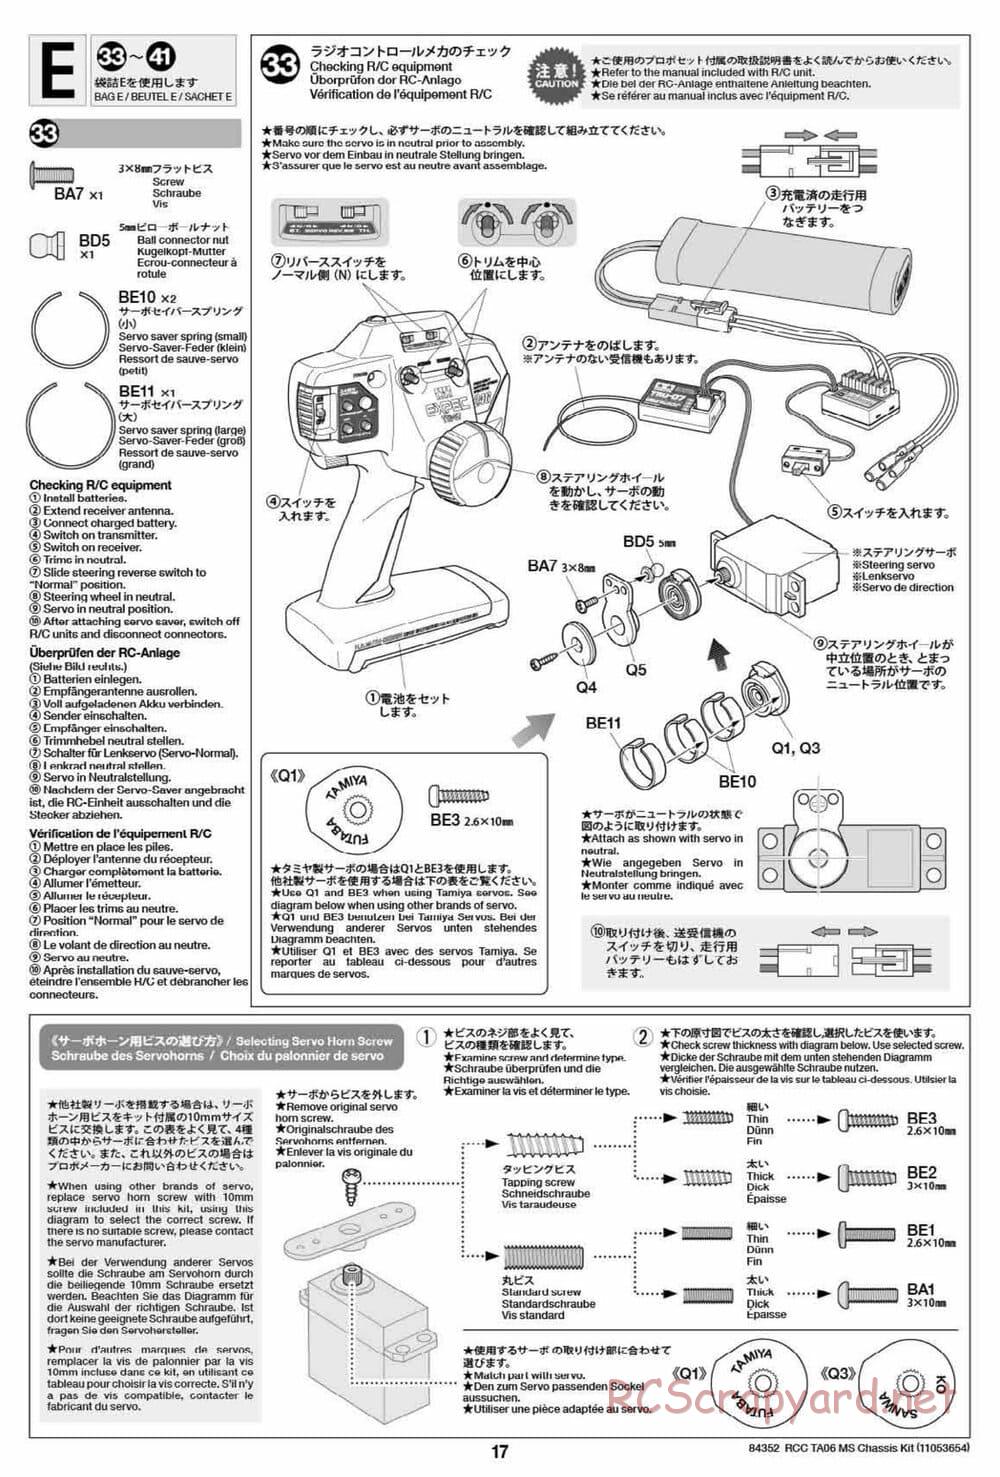 Tamiya - TA06 MS Chassis - Manual - Page 17